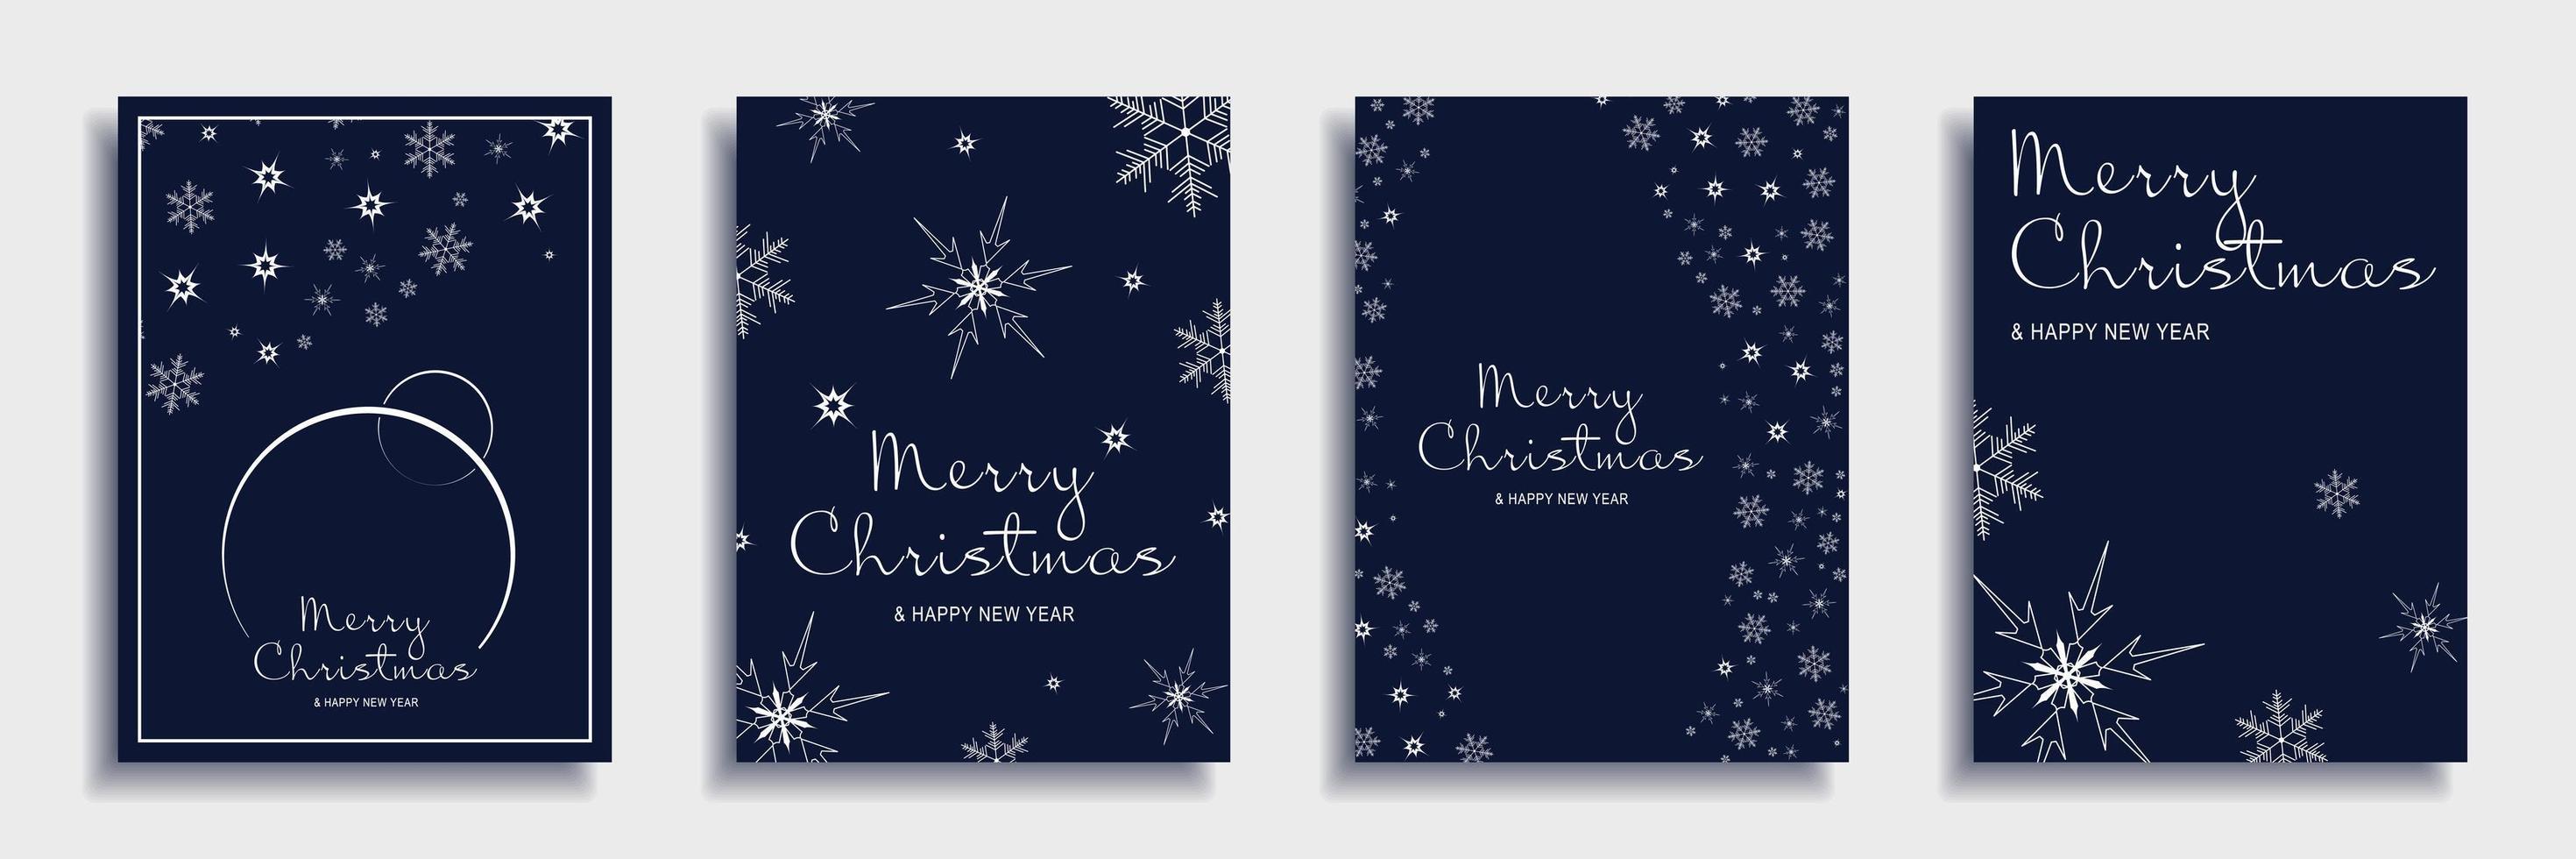 vrolijk kerstfeest en nieuwjaar 2022 brochure covers set. xmas minimaal bannerontwerp met witte sneeuwvlokkenpatronen en tekst op blauwe achtergronden. vectorillustratie voor flyer, poster of wenskaart vector